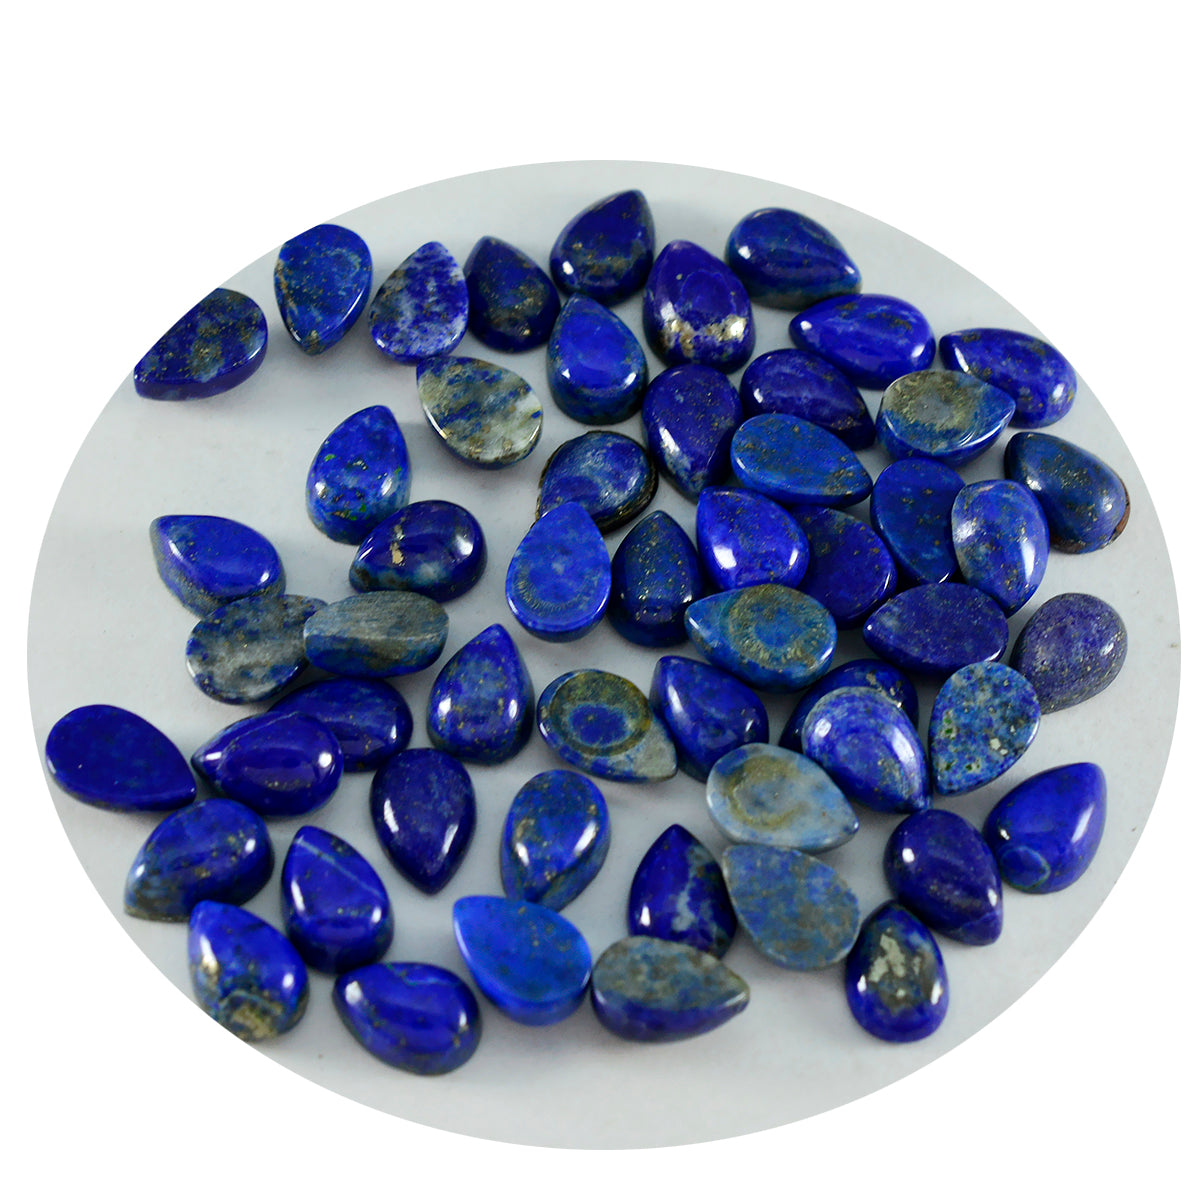 riyogems 1шт синий лазурит кабошон 4х6 мм грушевидной формы + качественный драгоценный камень